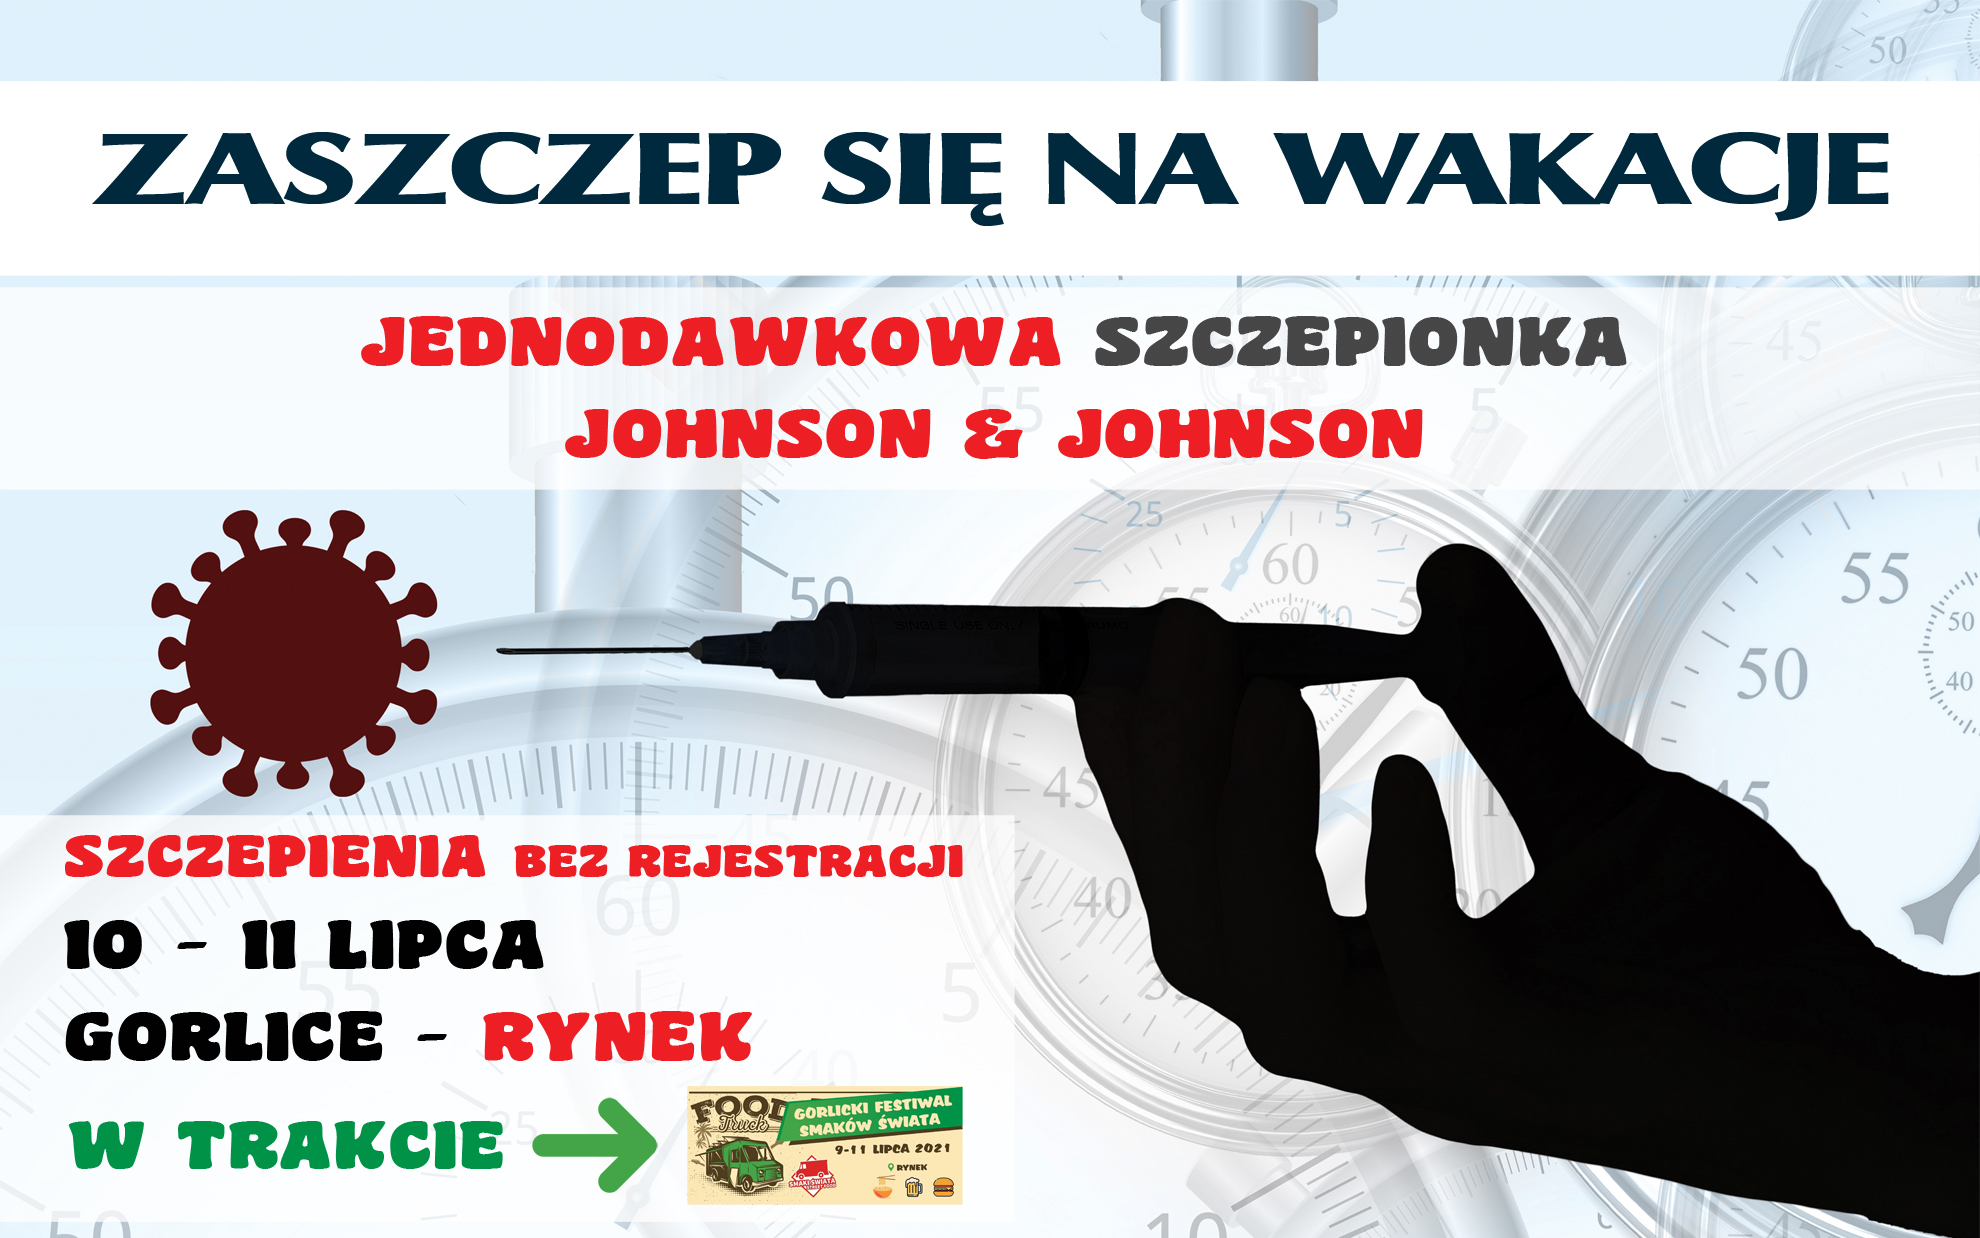 Baner informujący o szczepieniach na gorlickim Rynku w dniach 10-11 lipca.